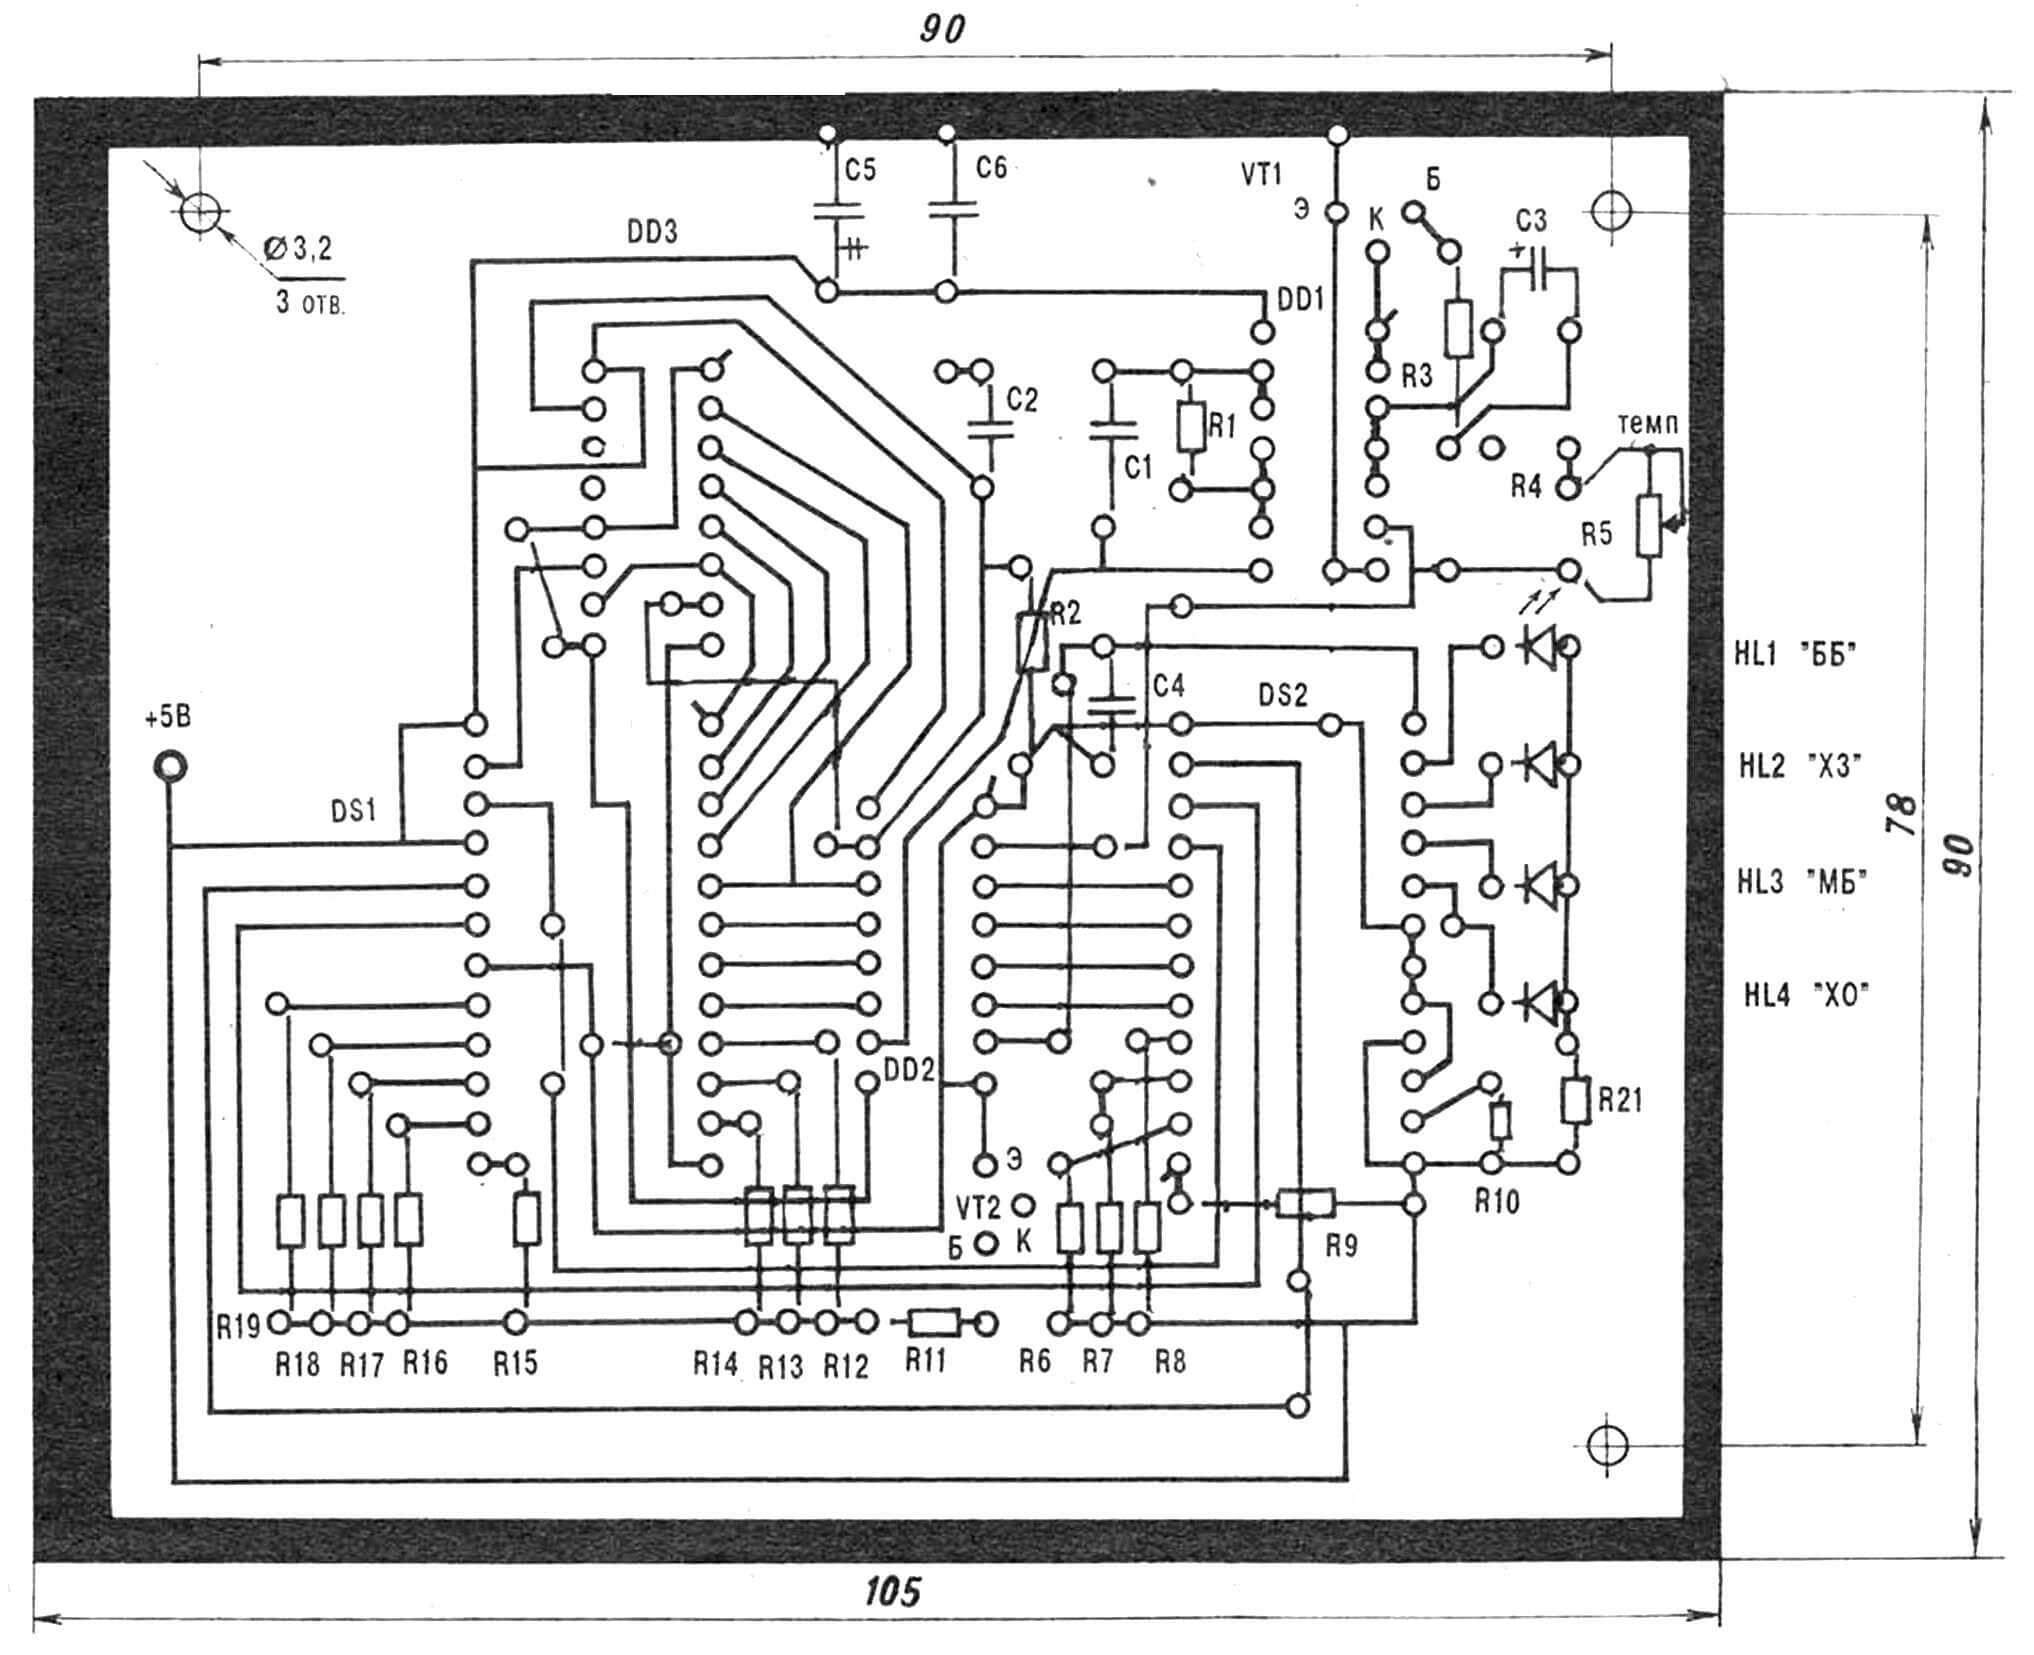 Печатная плата с обозначением расположения на ней радиоэлементов. Переменный резистор R20 условно не показан.